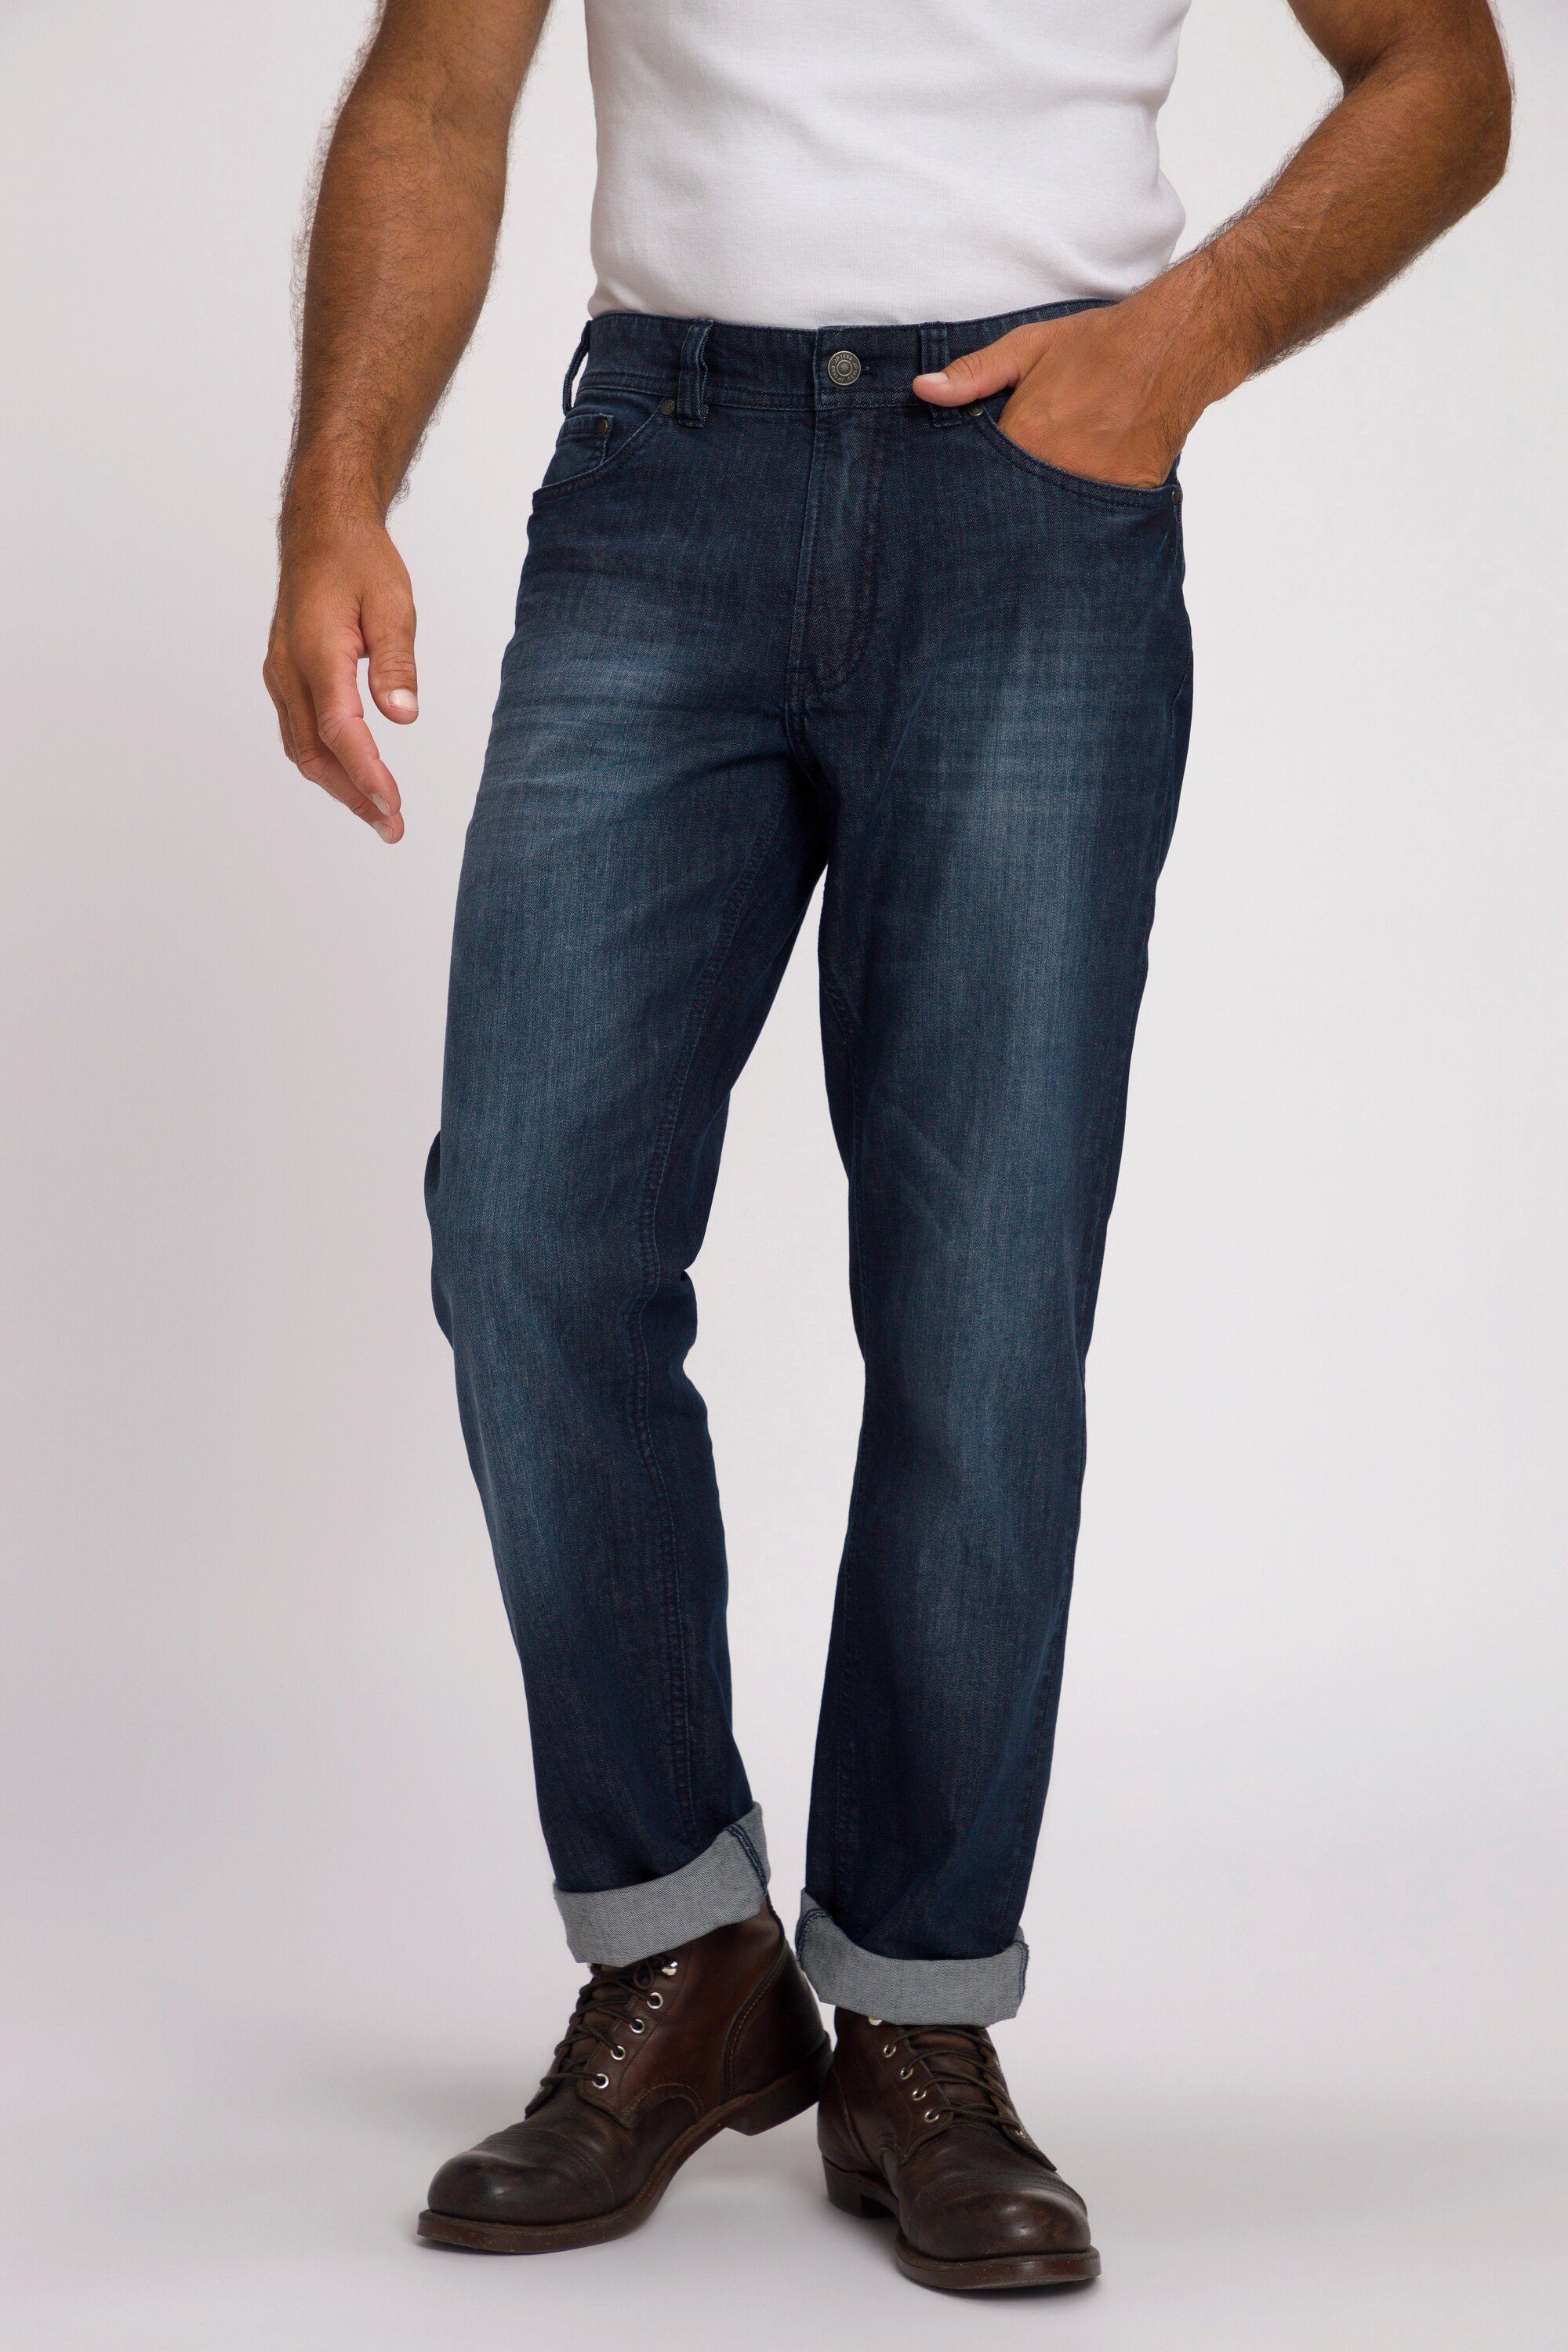 JP1880 Cargohose Jeans Denim 5-Pocket Denim Regular Fit dark blue denim